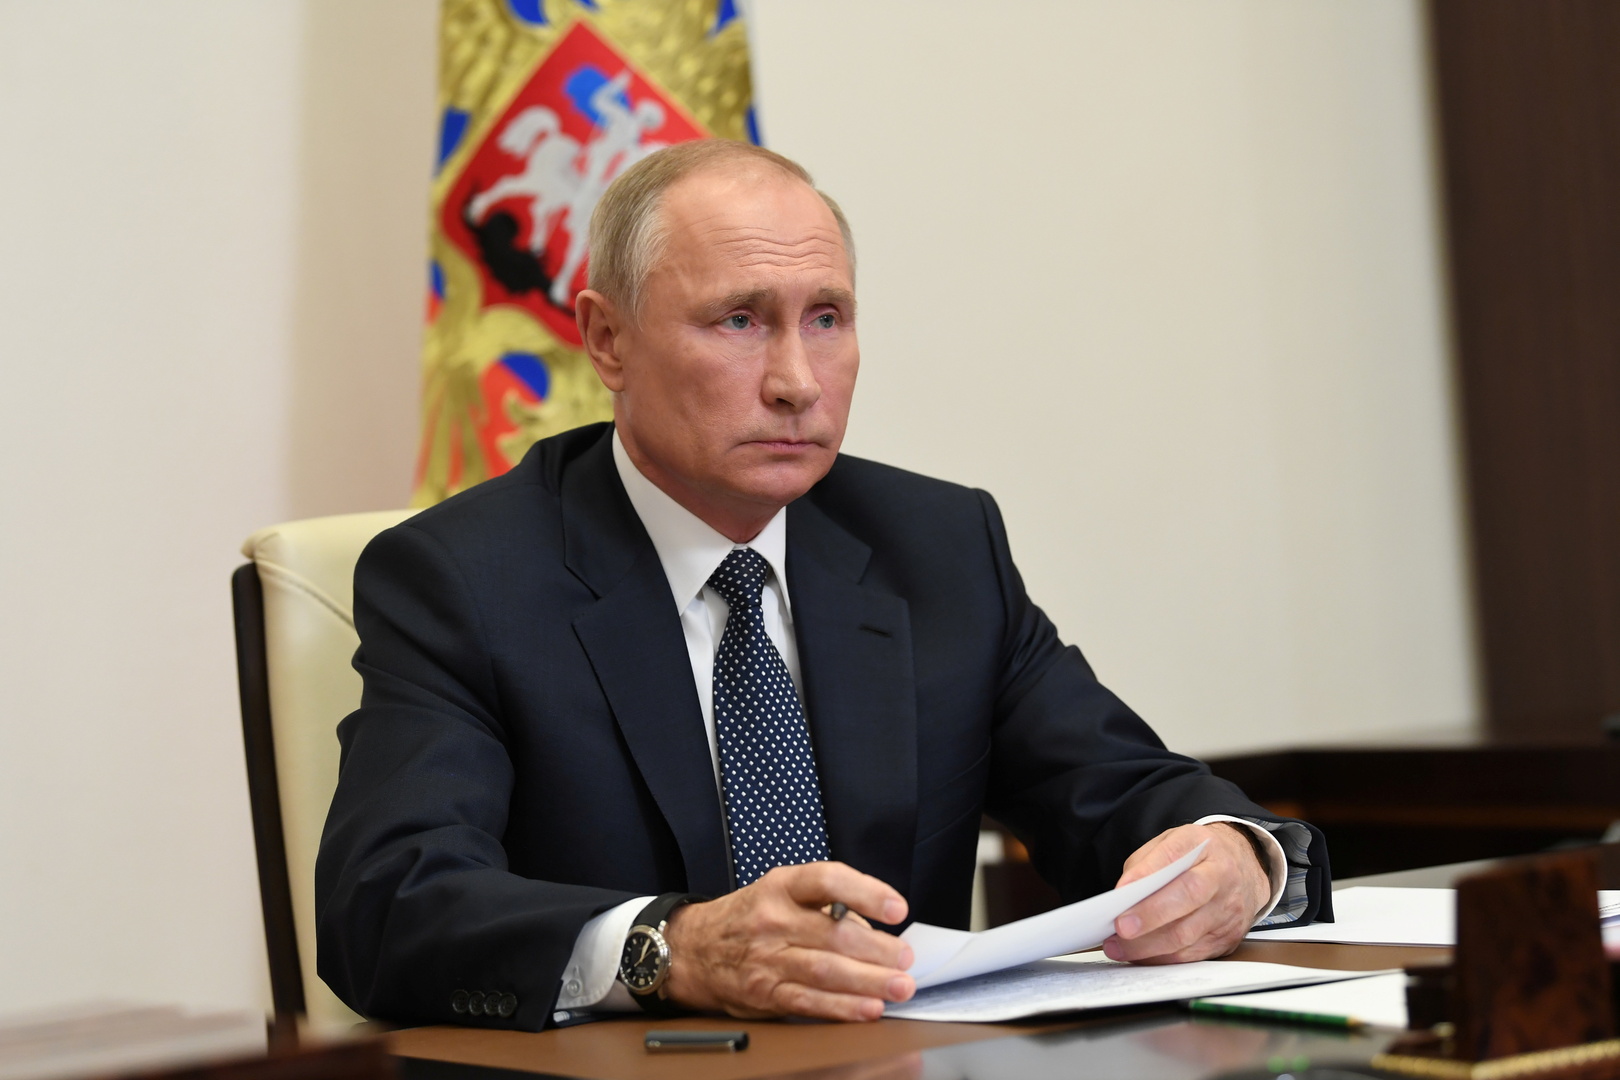 بوتين يوقع على قانون ضريبة دخل جديدة في روسيا